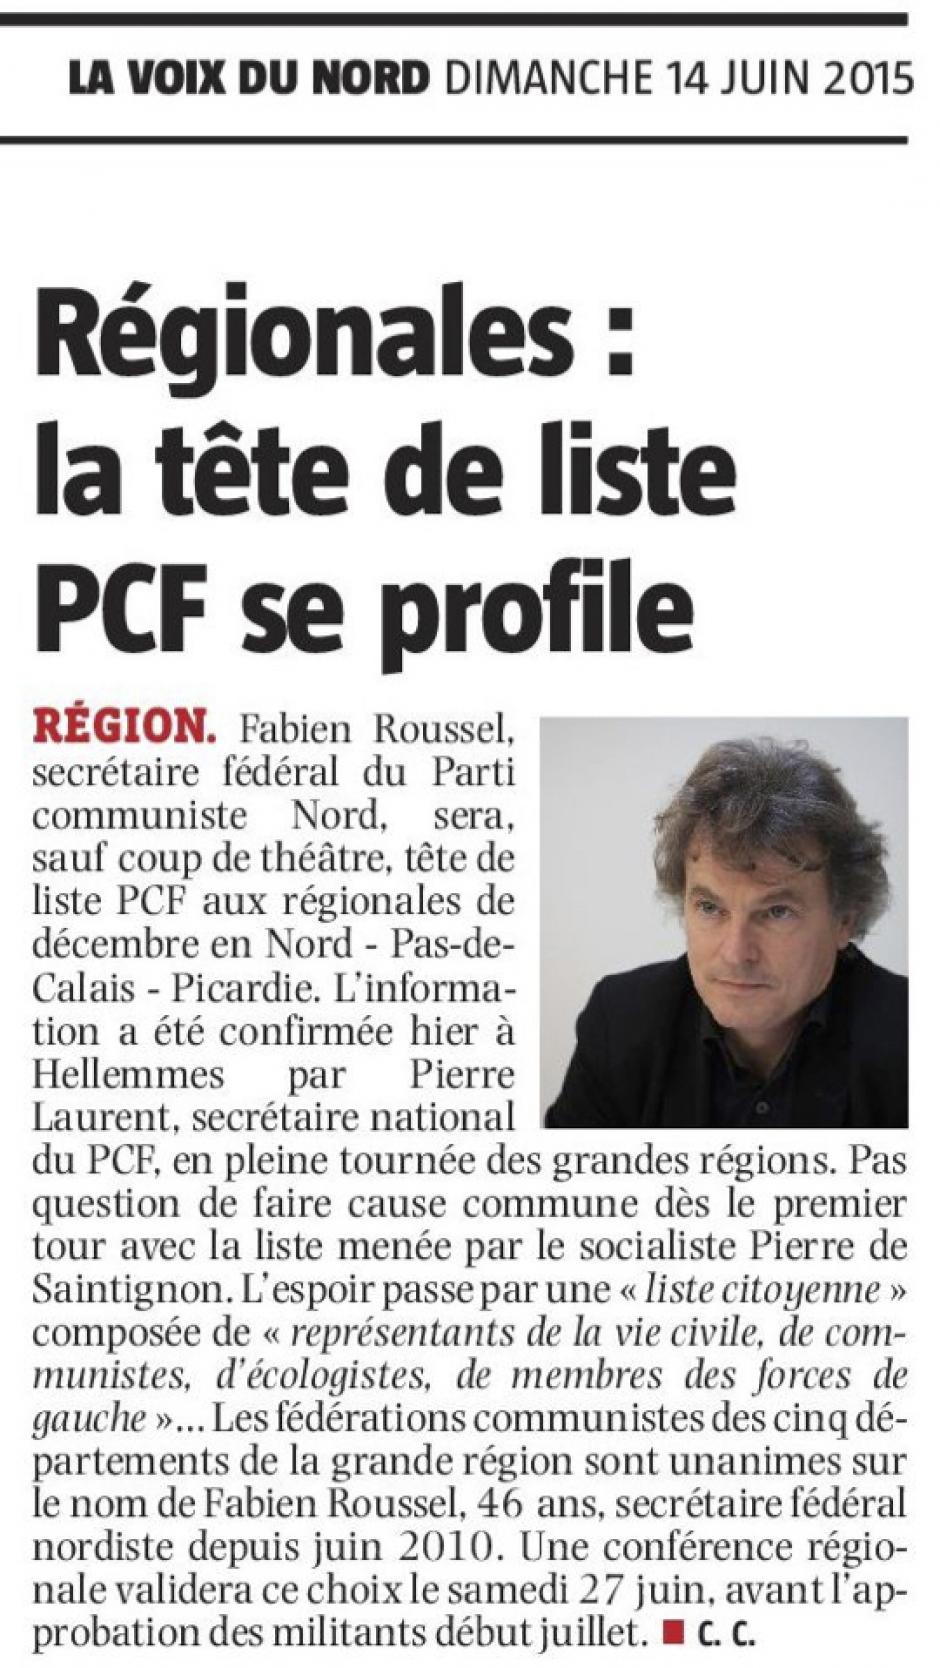 20150614-VdN-Picardie-Nord-Pas-de-Calais-R2015-La tête de liste PCF se profile